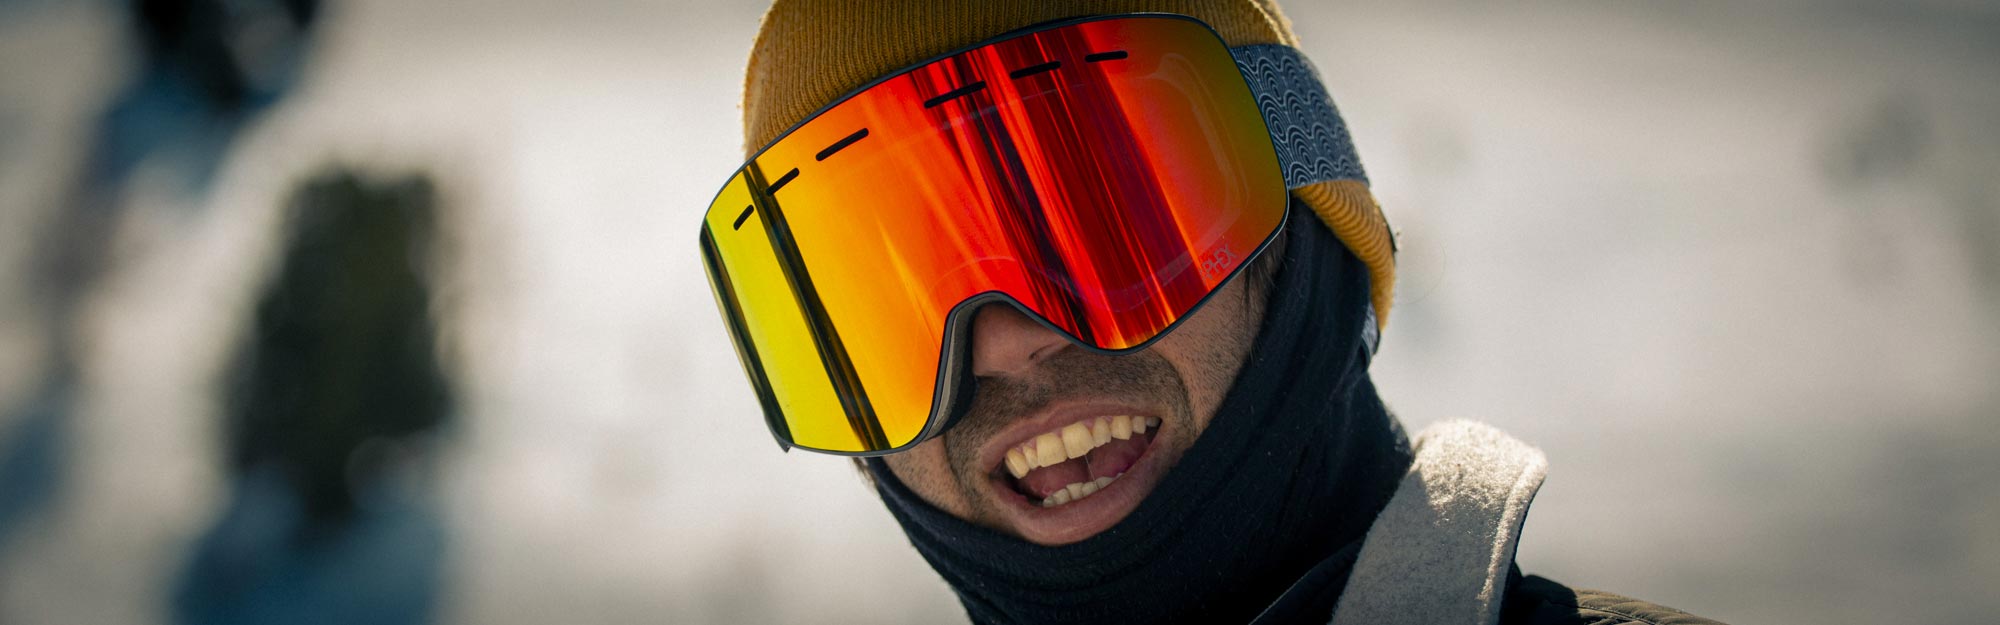 Virgo ski goggles custom for a retro style. With Aluan Ricciardi our rider